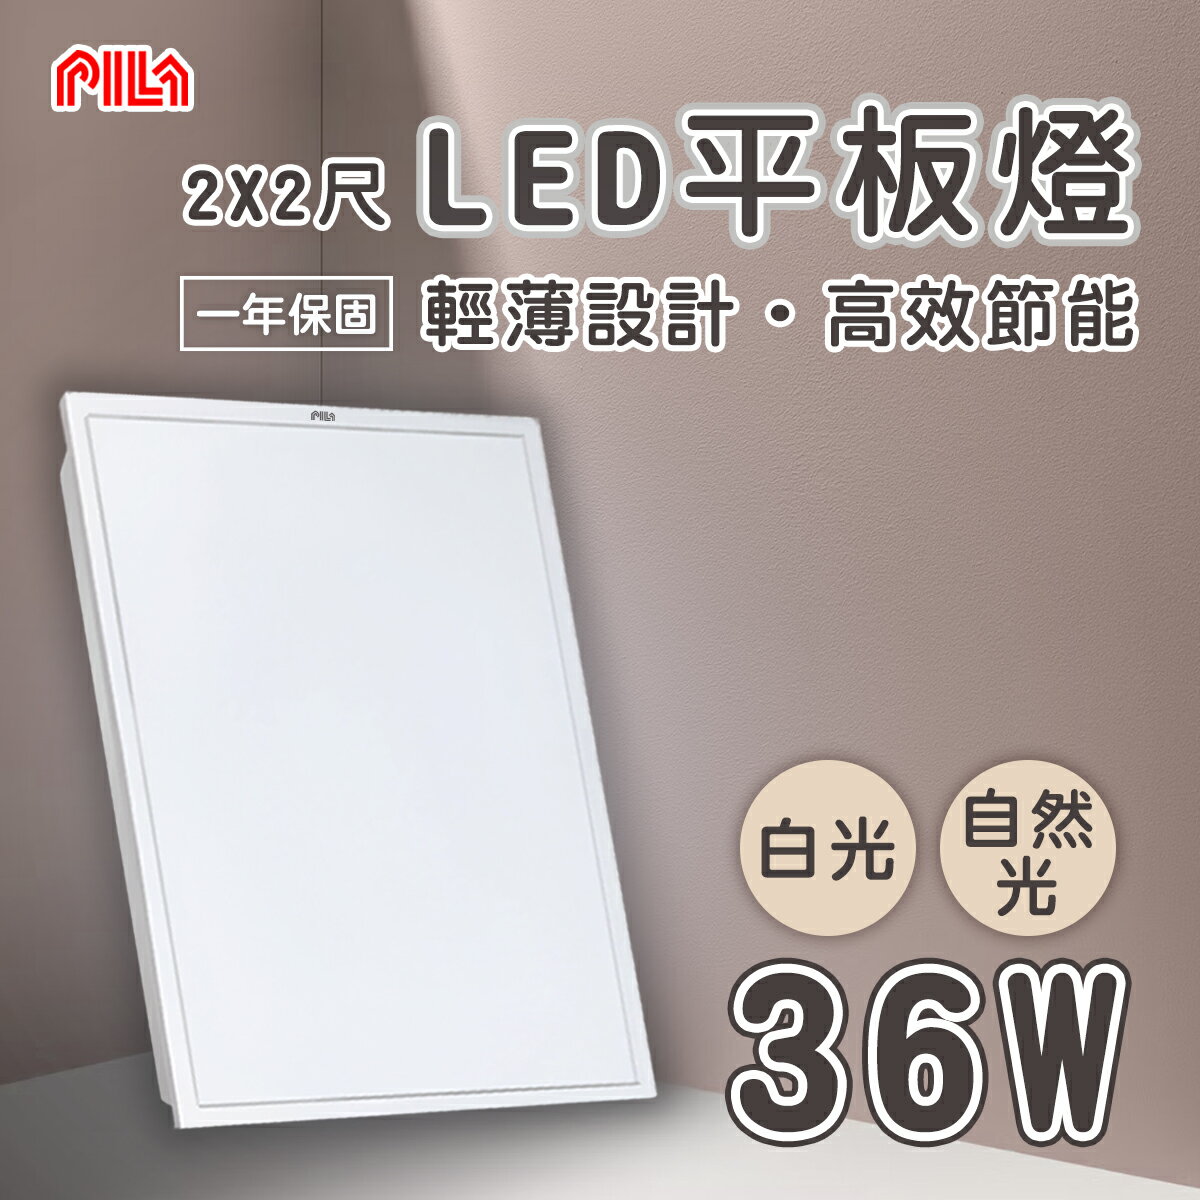 沛亮 LED 平板燈 2尺X2尺 36W 全電壓 白光/自然光 直下式〖永光照明〗TO-PILA-RC36%